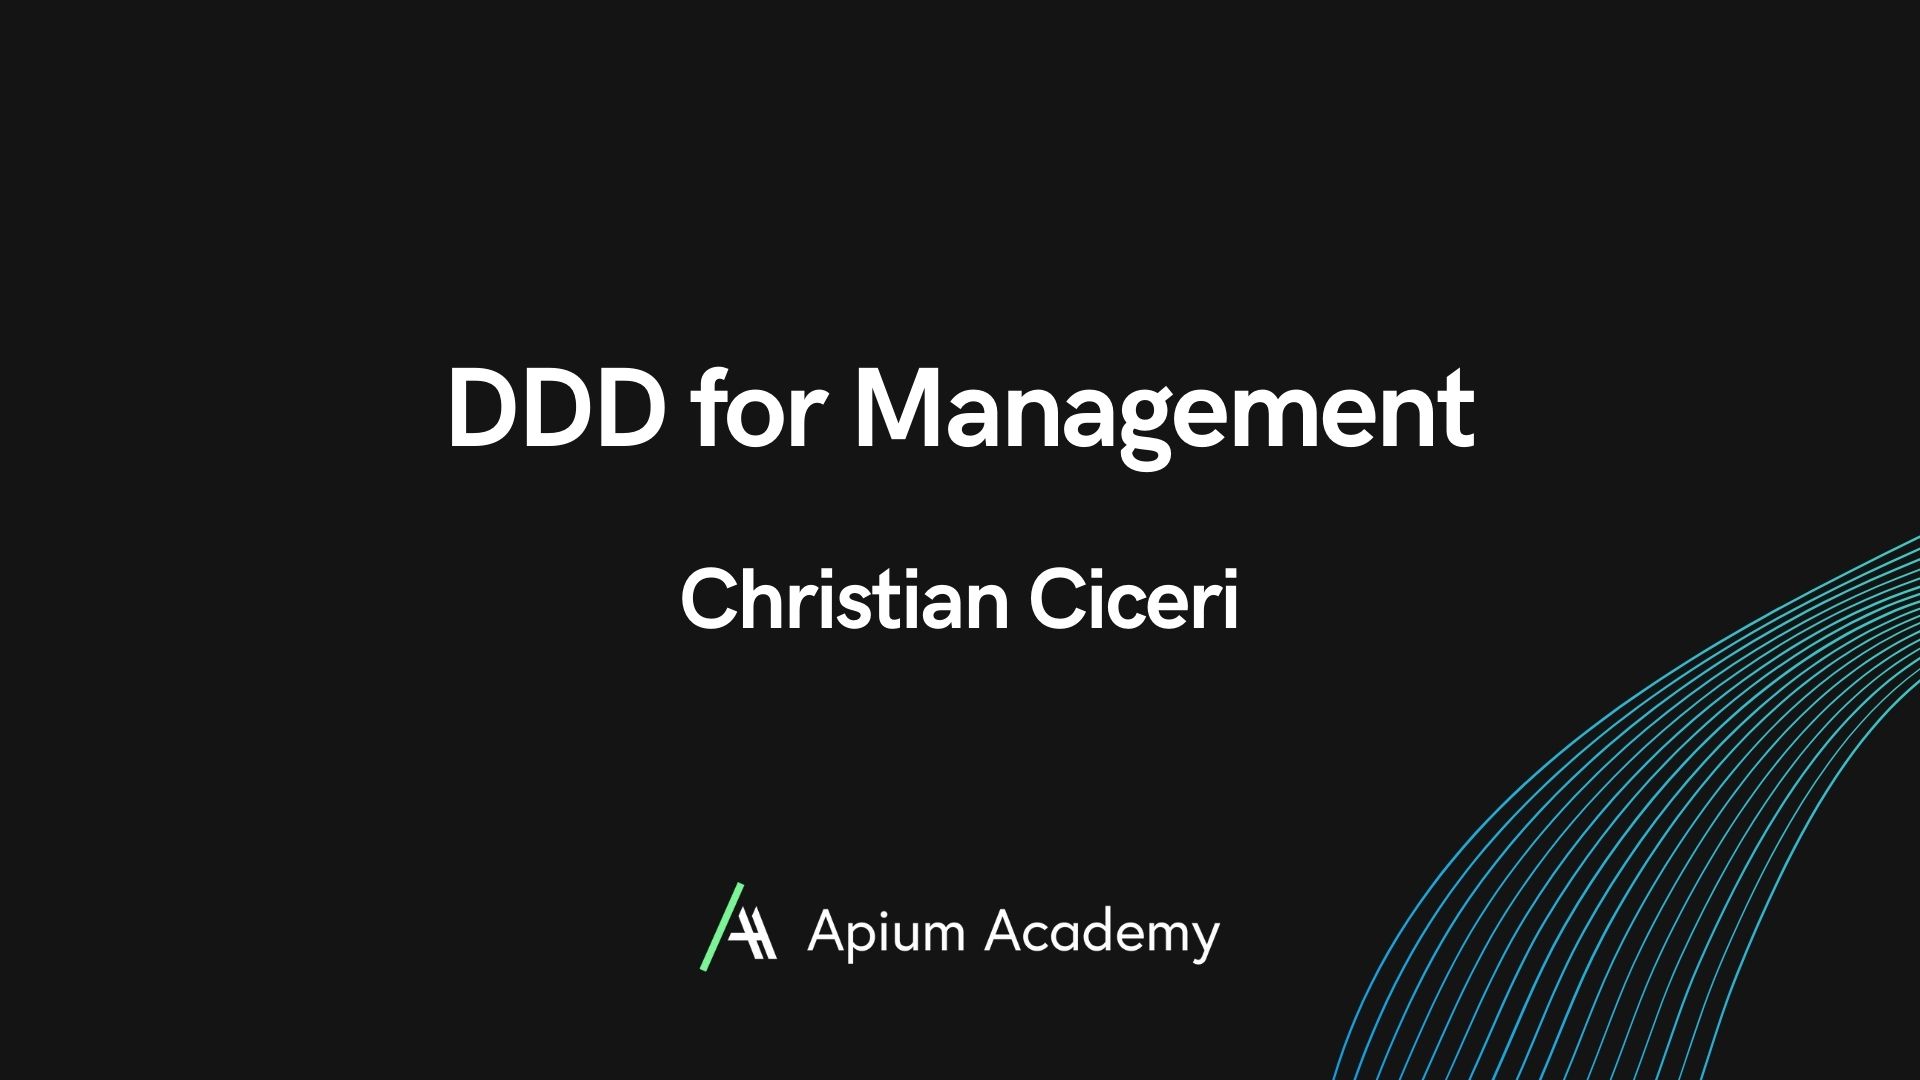 DDD for Management Workshop